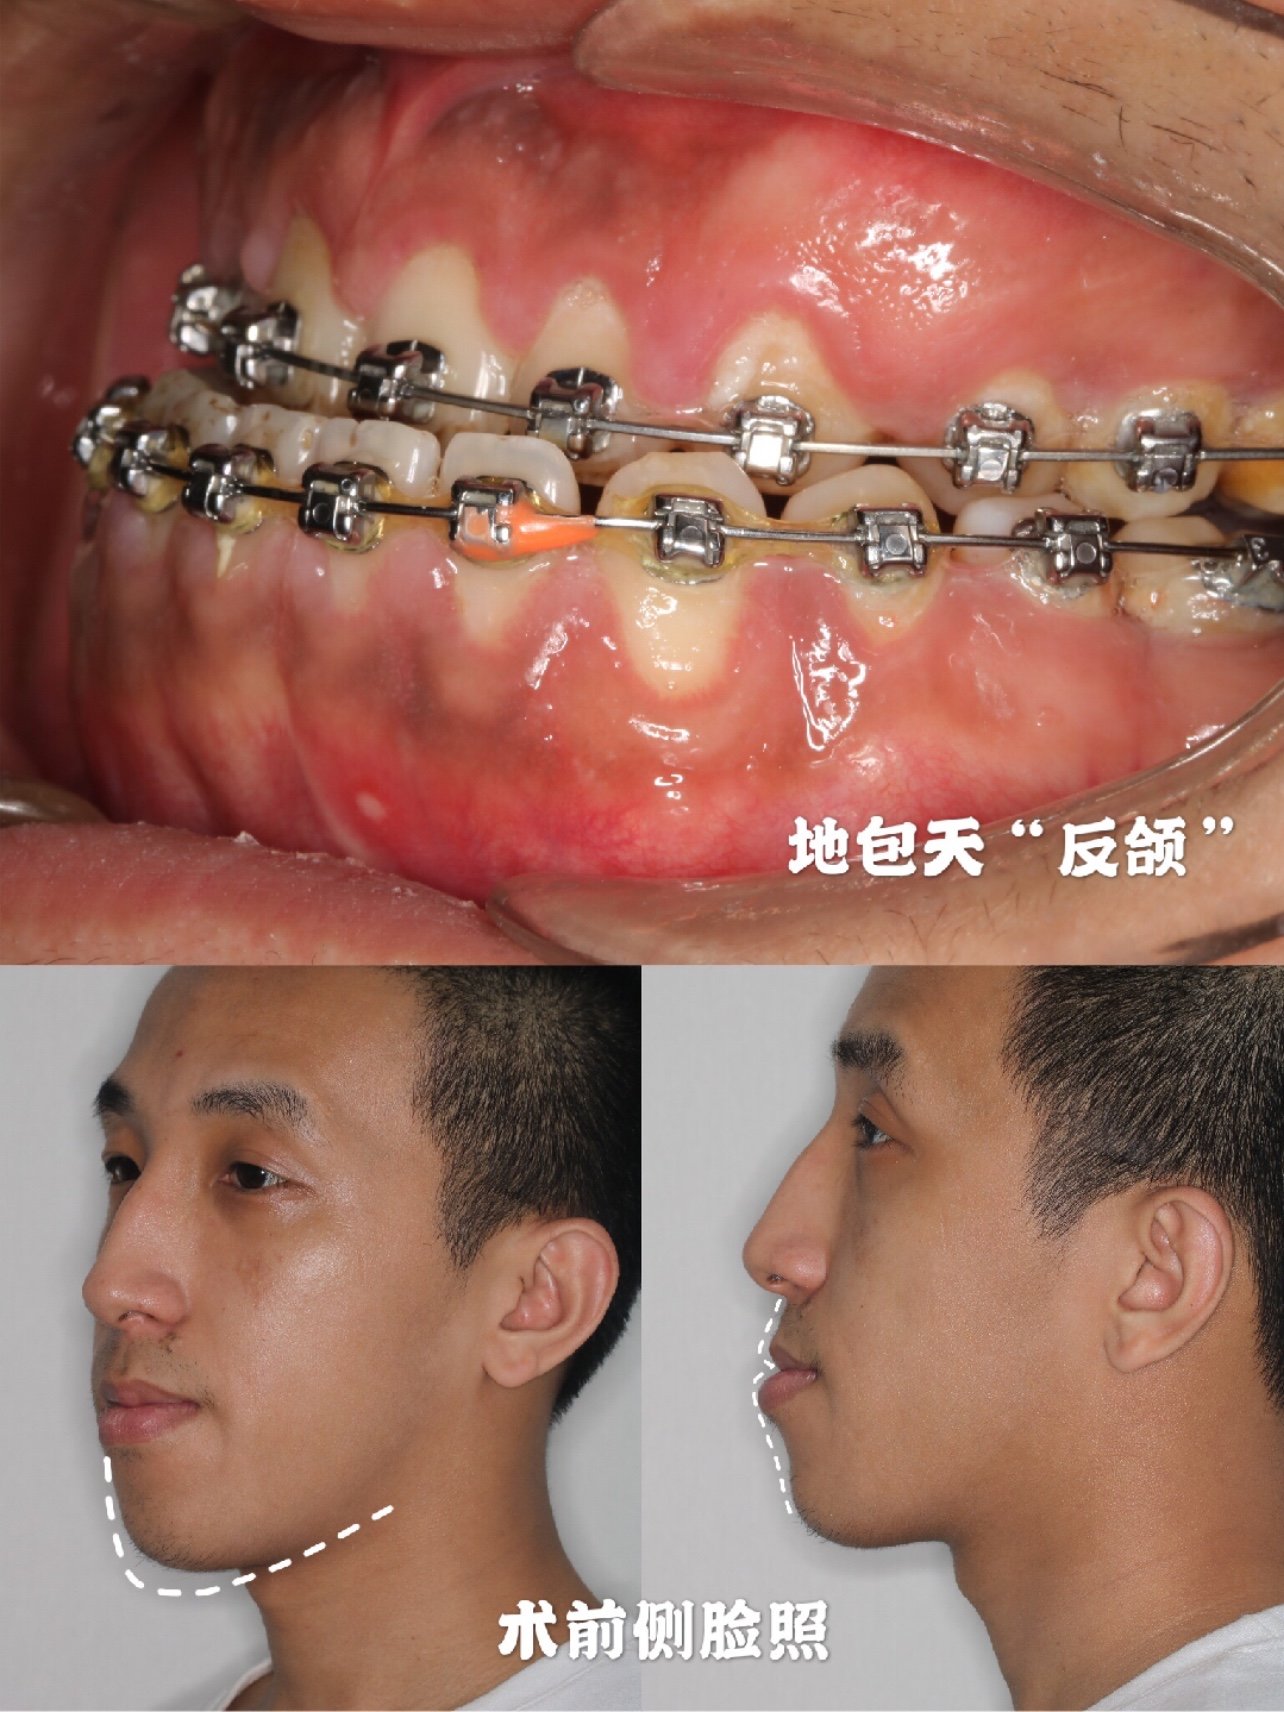 正畸正颌手术告别地包天,偏颌,牙齿畸形问题